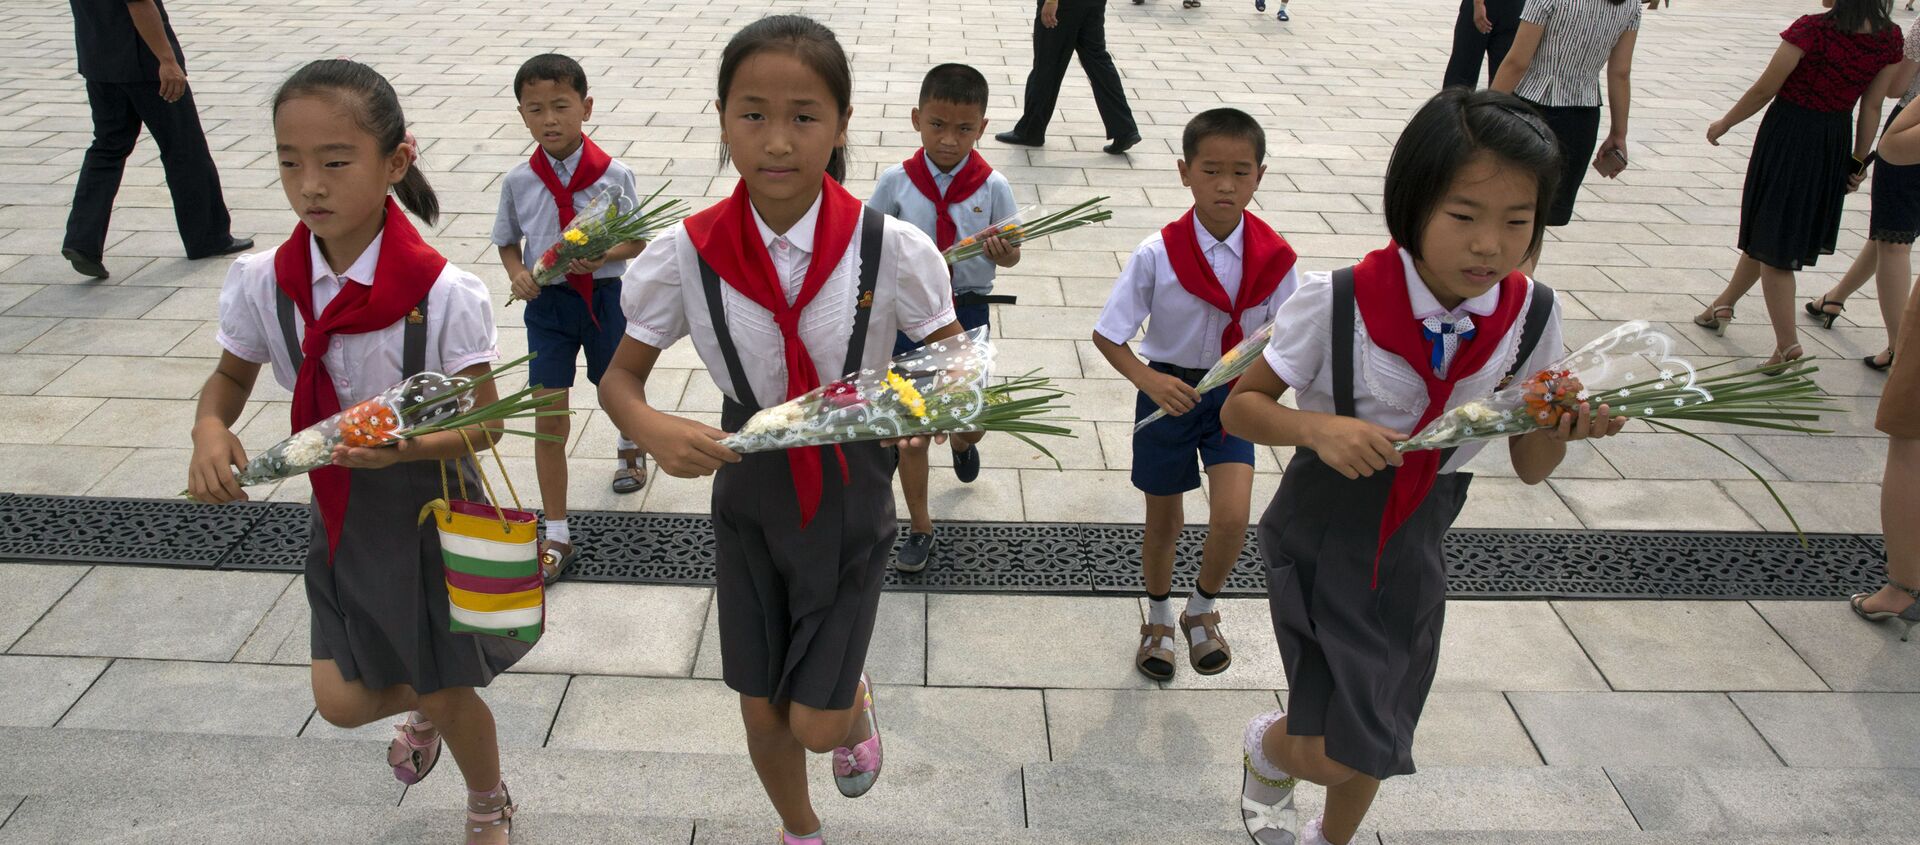 Школьники несут цветы к памятникам северокорейским лидерам Ким Ир Сена и Ким Чен Ира в Пхеньяне в годовщину окончания Второй мировой войны и освобождения от японского колониального правления  - Sputnik 日本, 1920, 21.01.2021